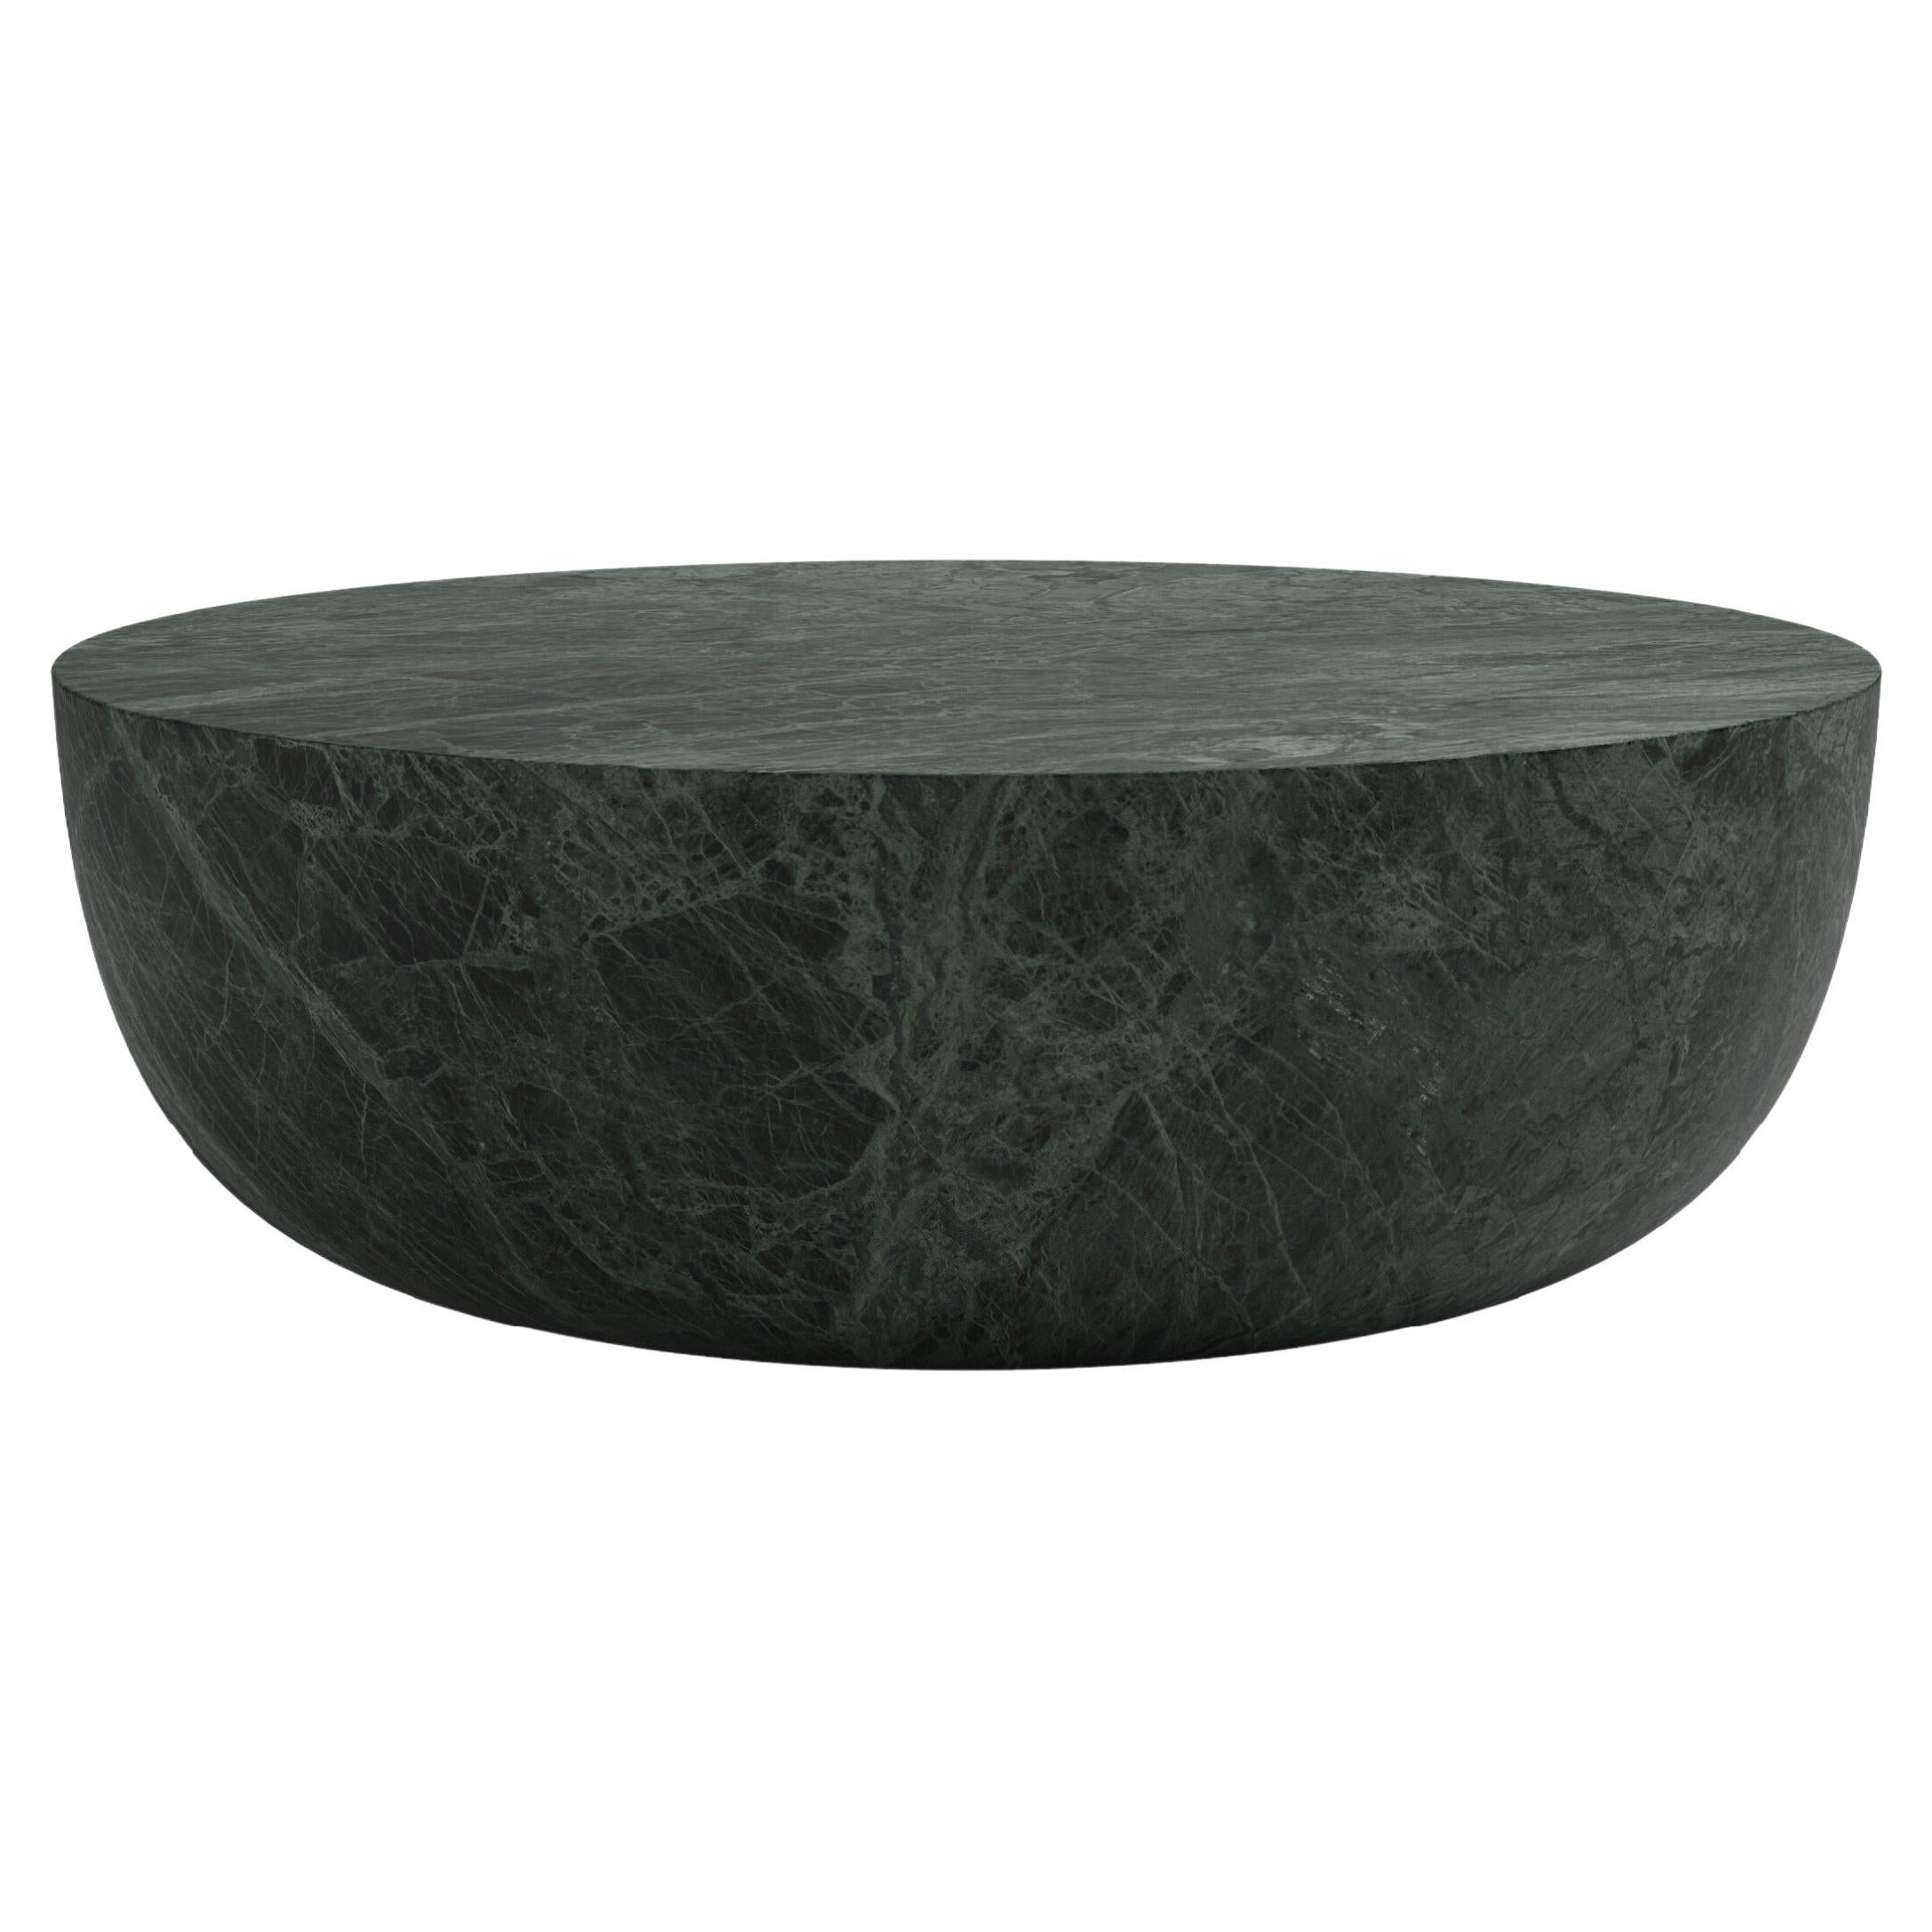 FORM(LA) Sfera Round Coffee Table 36”L x 36”W x 16”H Verde Guatemala Marble For Sale